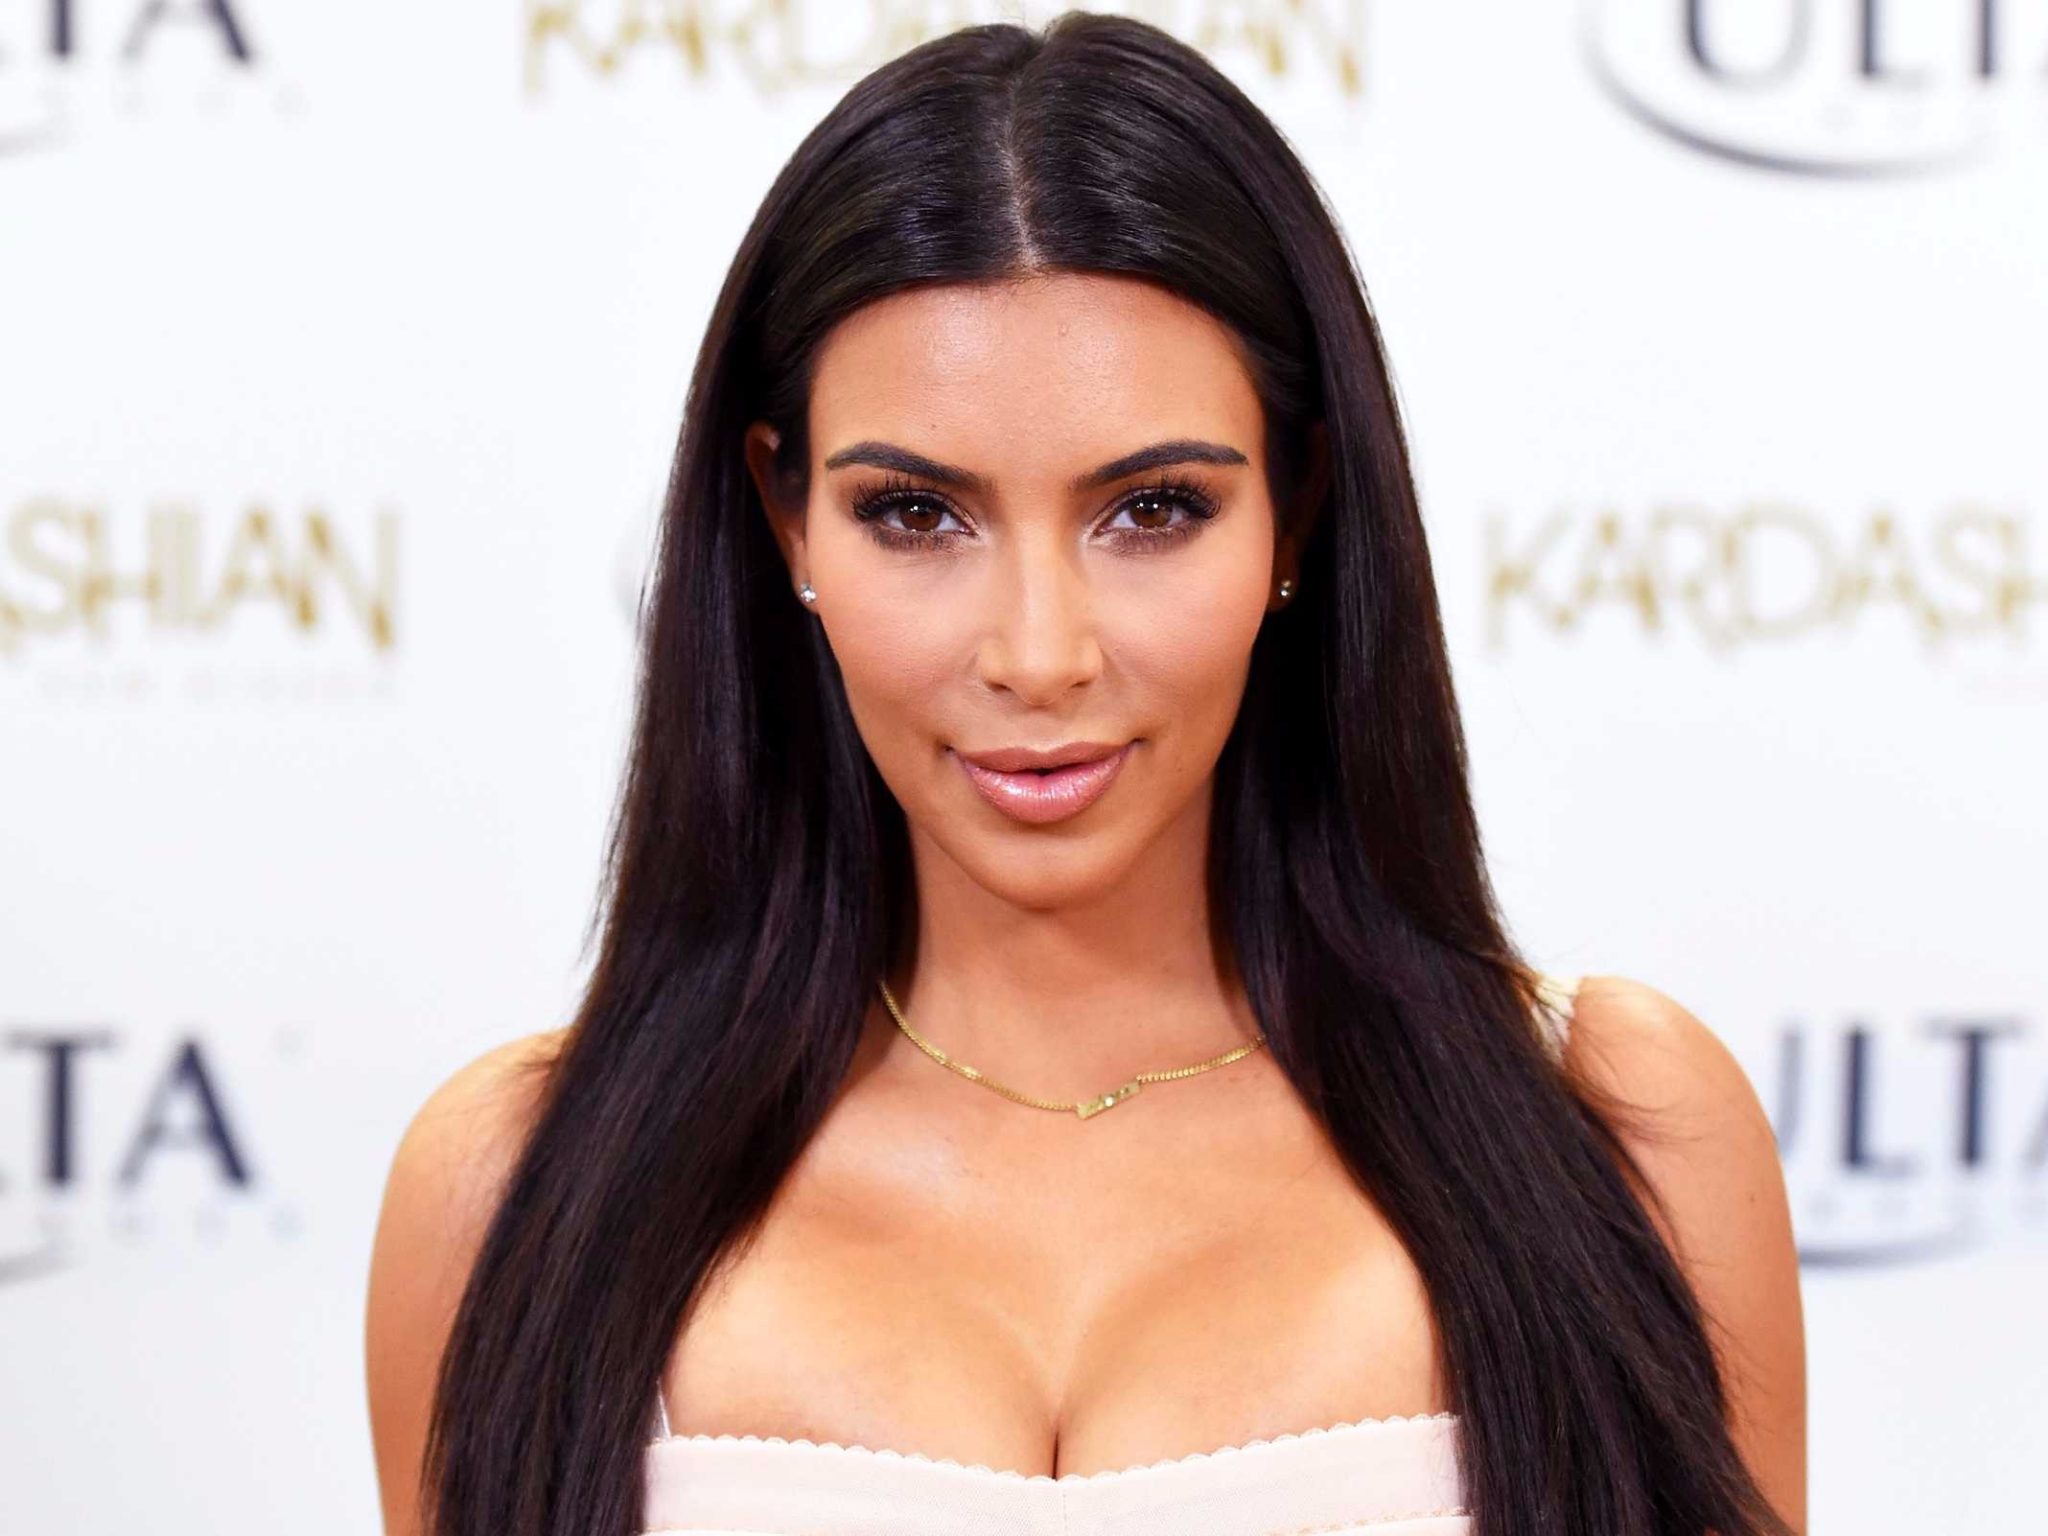 Nue, Kim Kardashian offre un nouveau cliché improbable